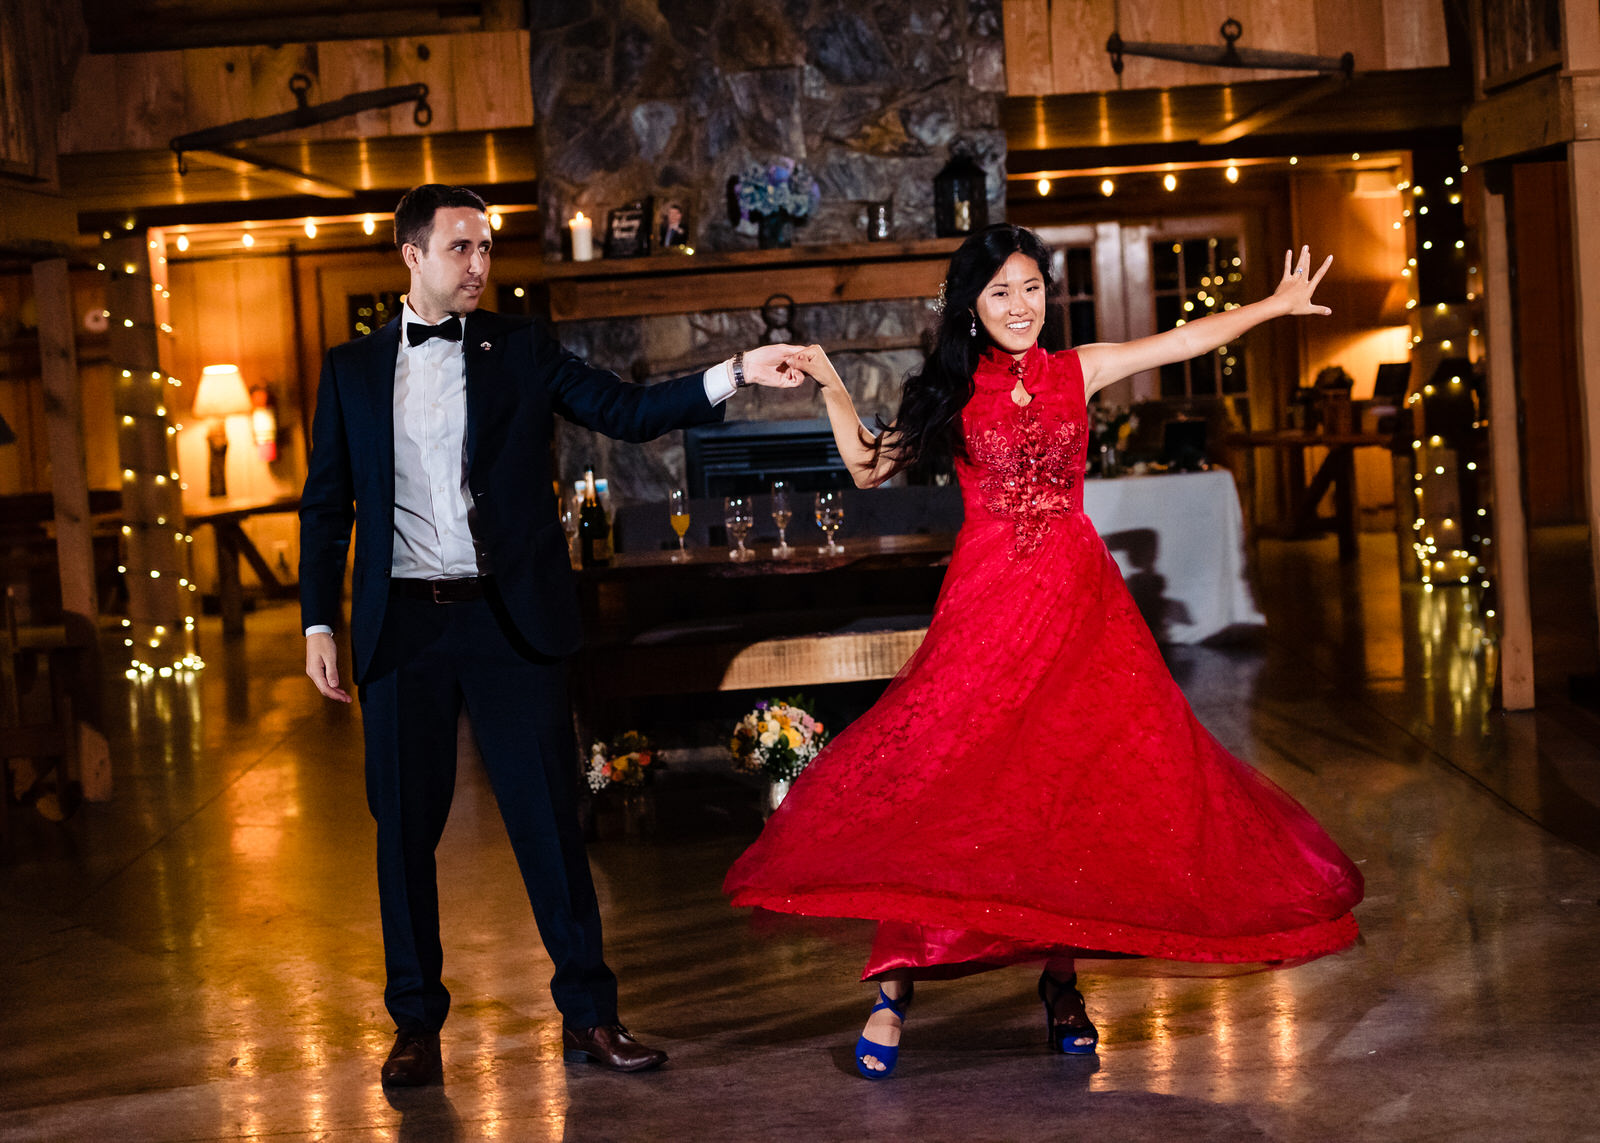 Groom in a tuxedo twirls a bride in a red wedding dress